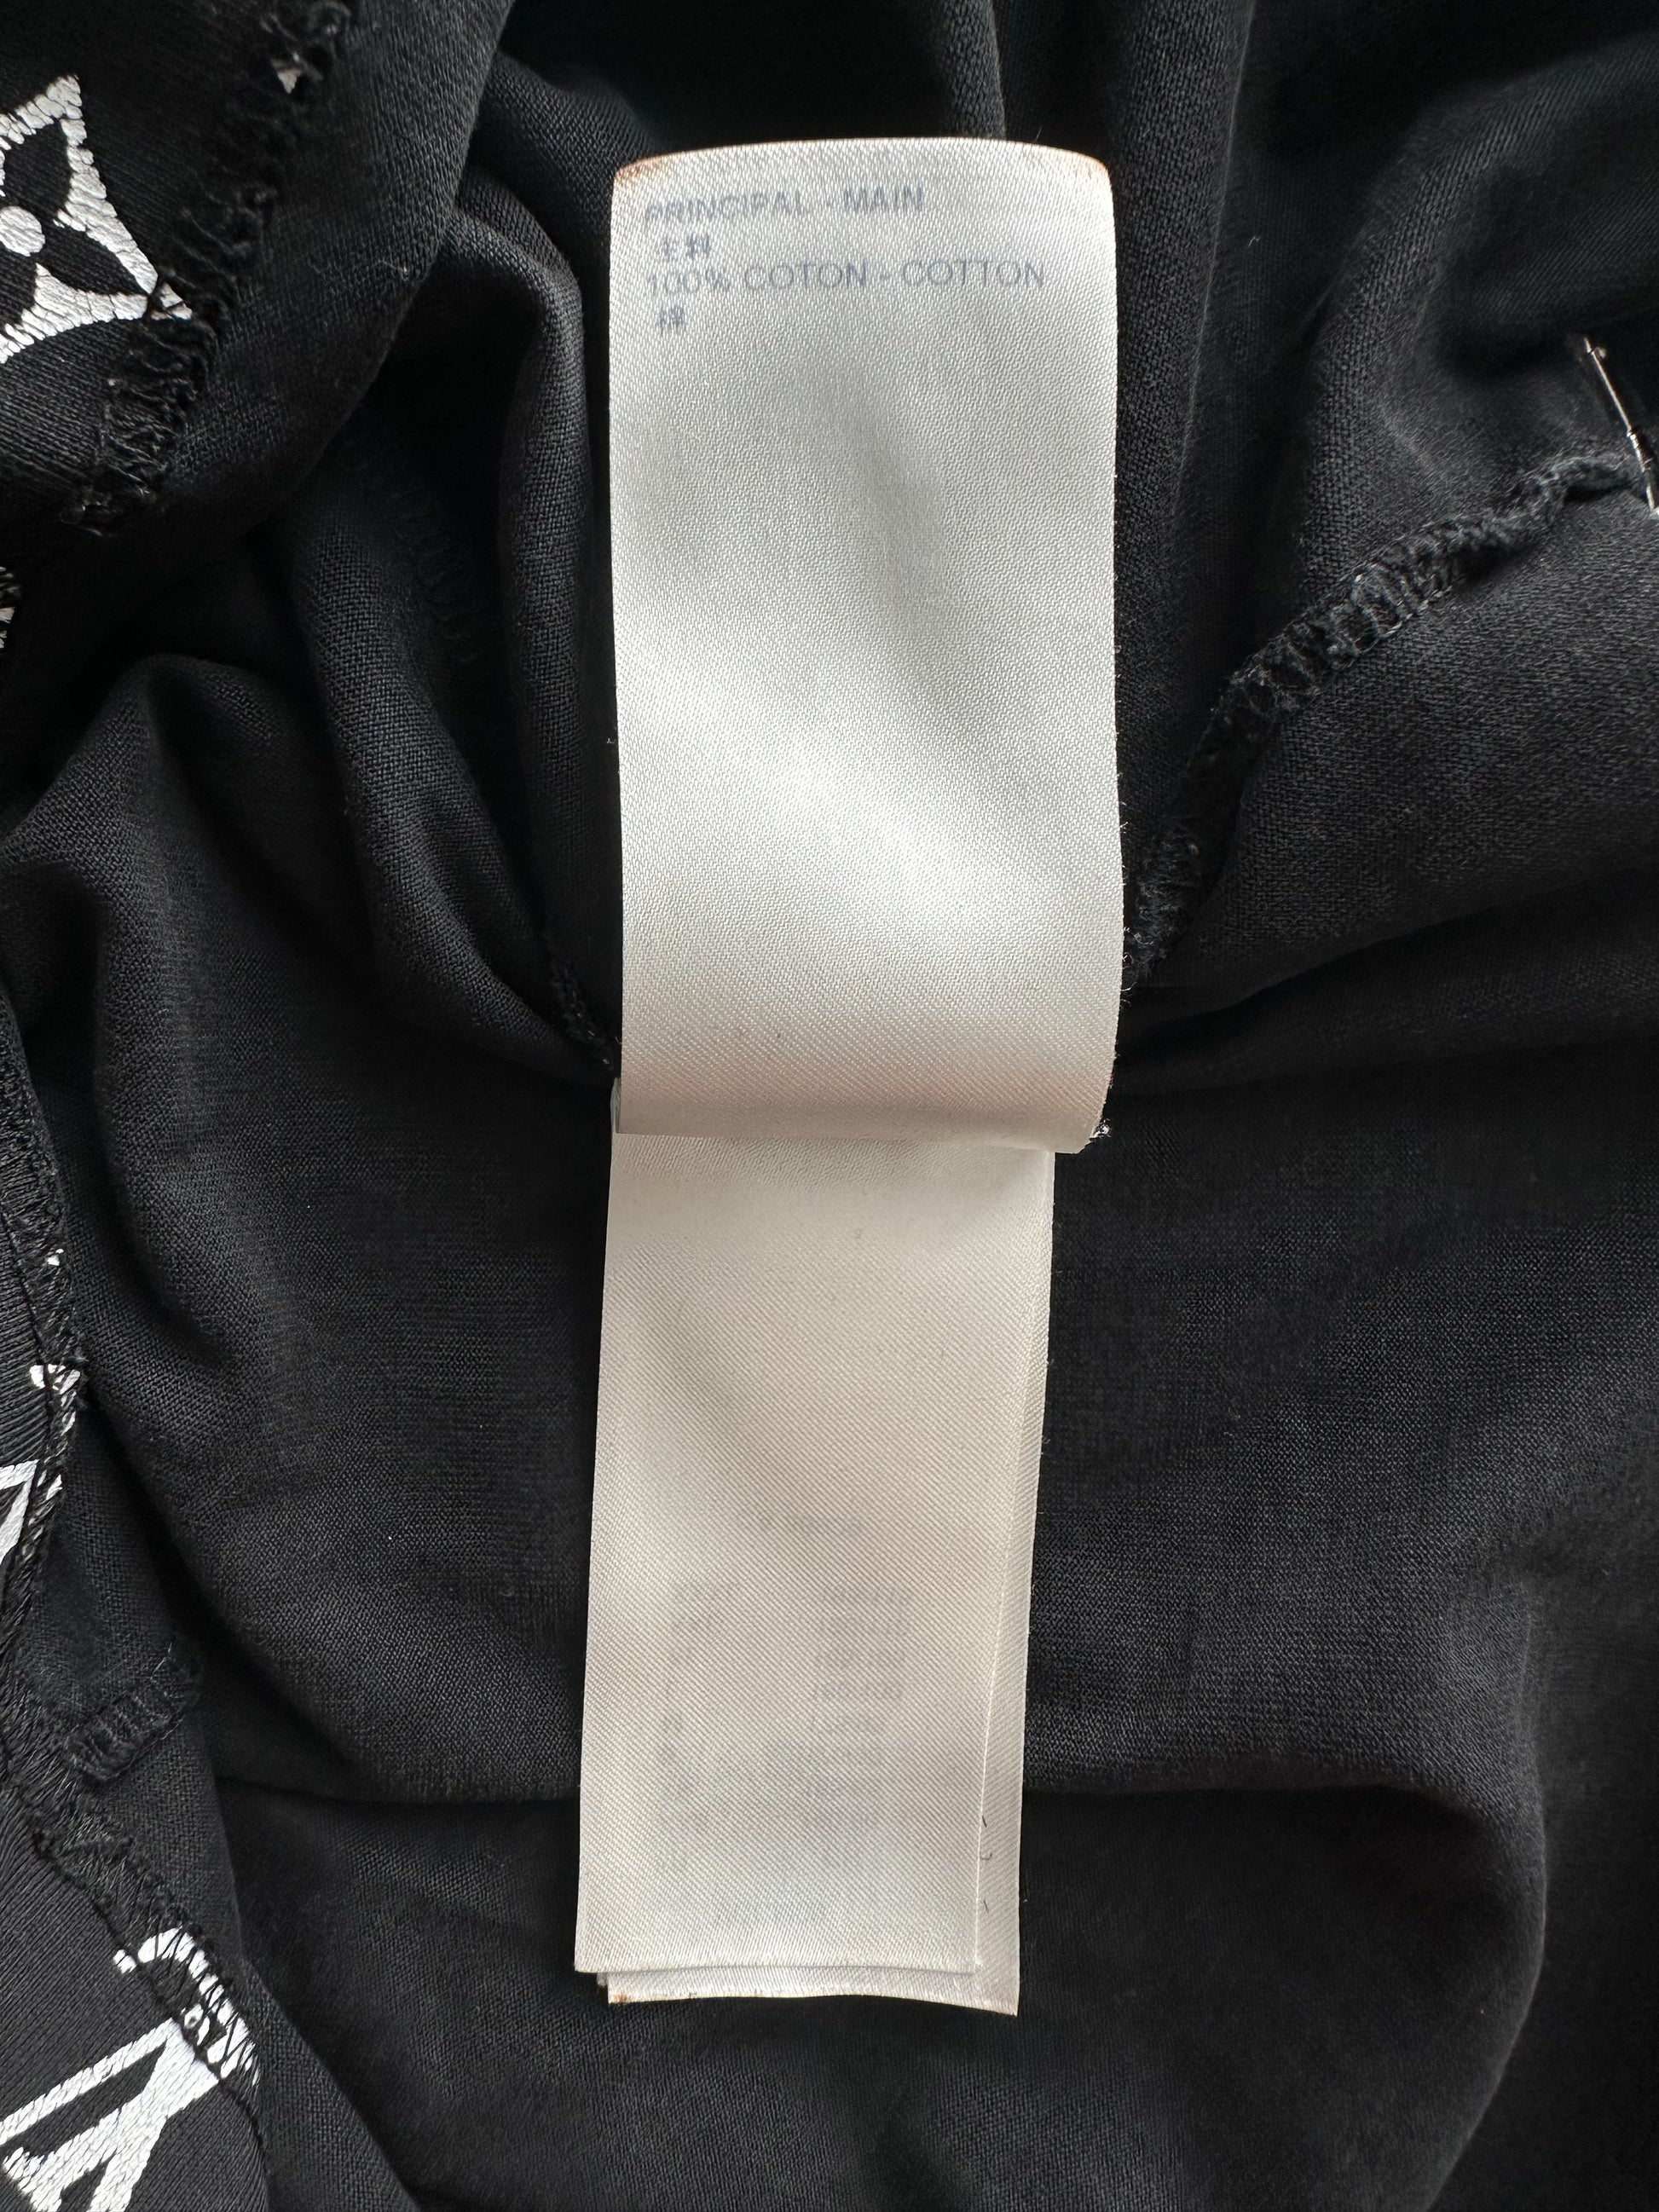 Louis Vuitton Monogram Gradient Cotton T-Shirt